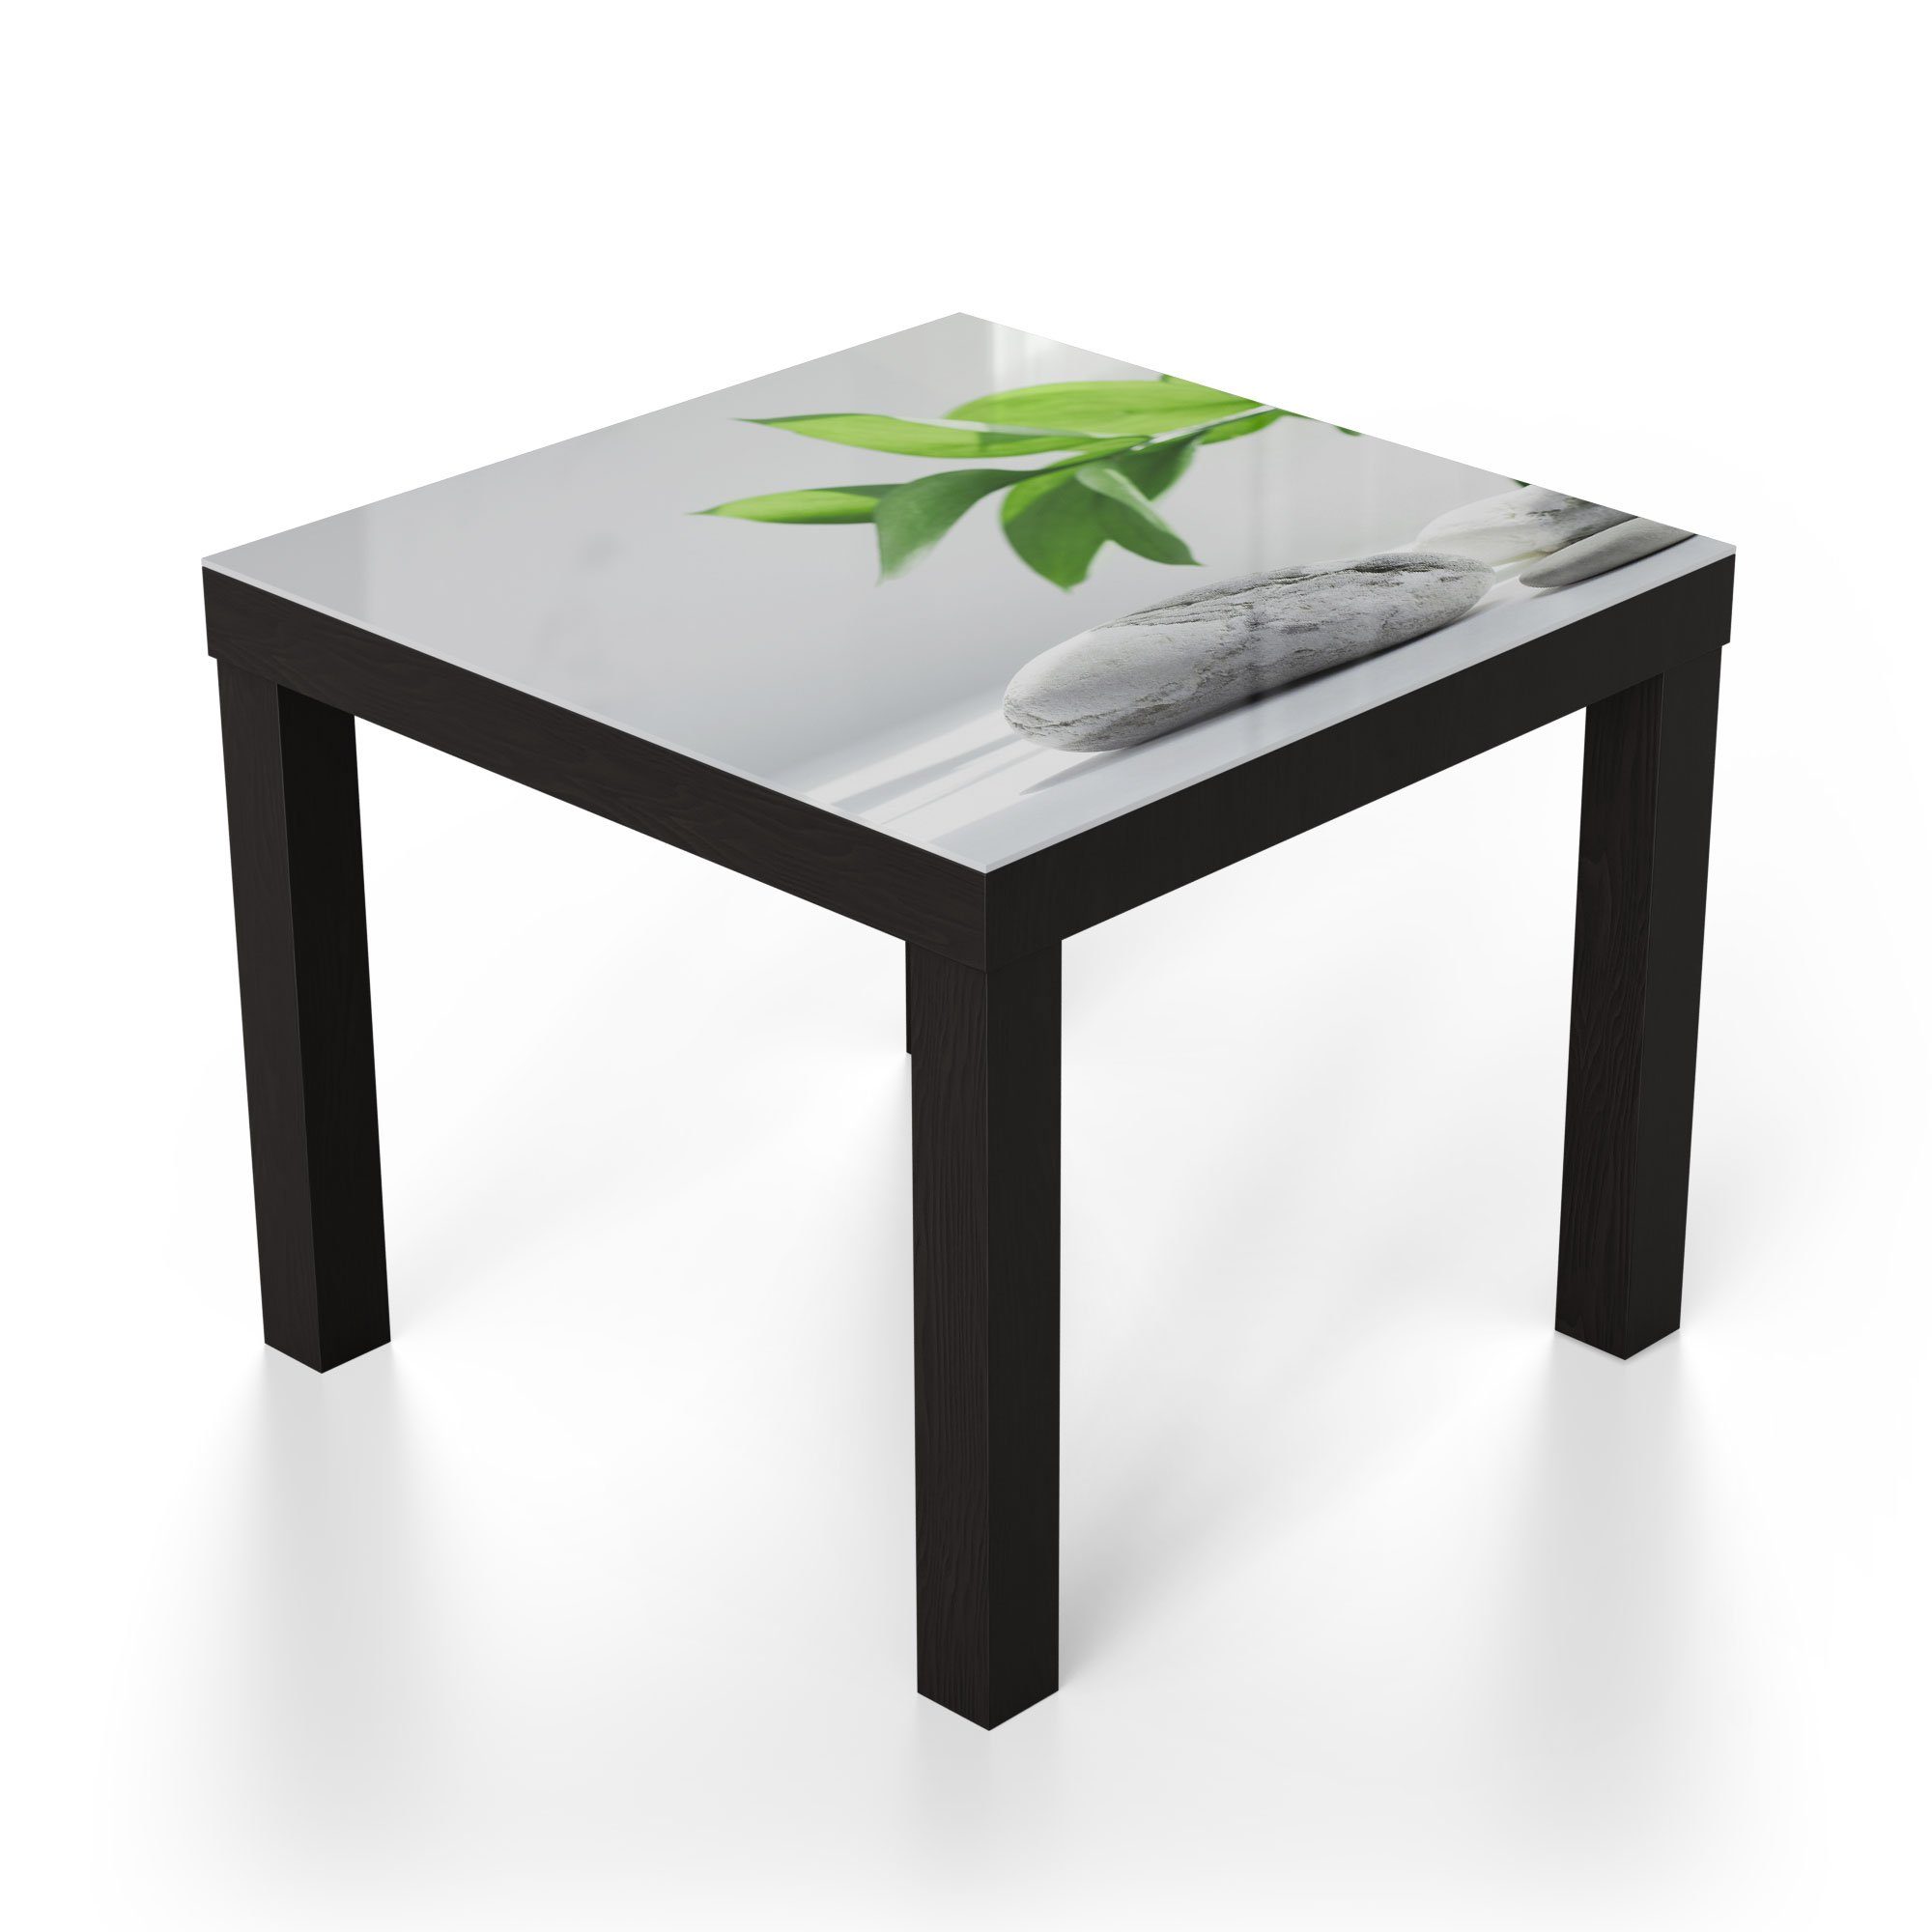 'Wellnesssteine Beistelltisch Glastisch Couchtisch modern mit DEQORI Grün', Schwarz Glas